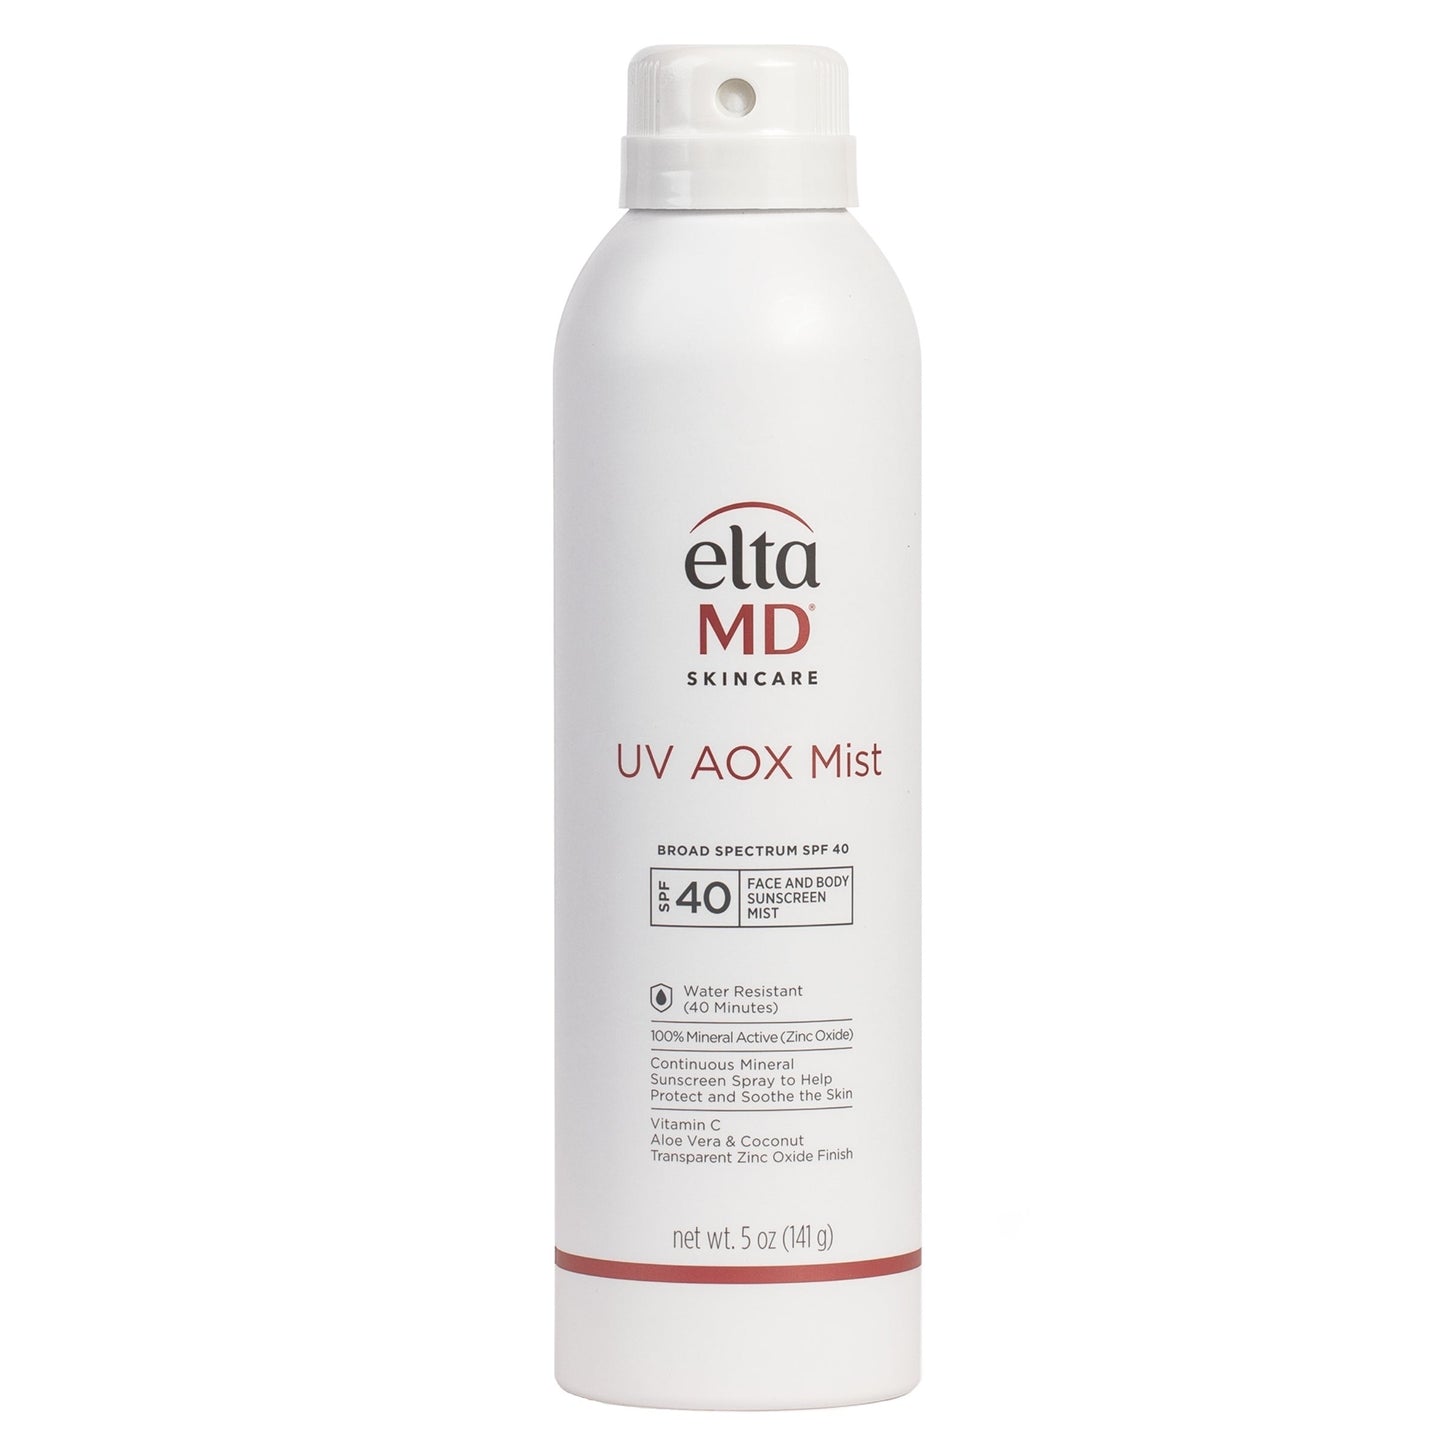 EltaMD UV AOX Mist SPF 40